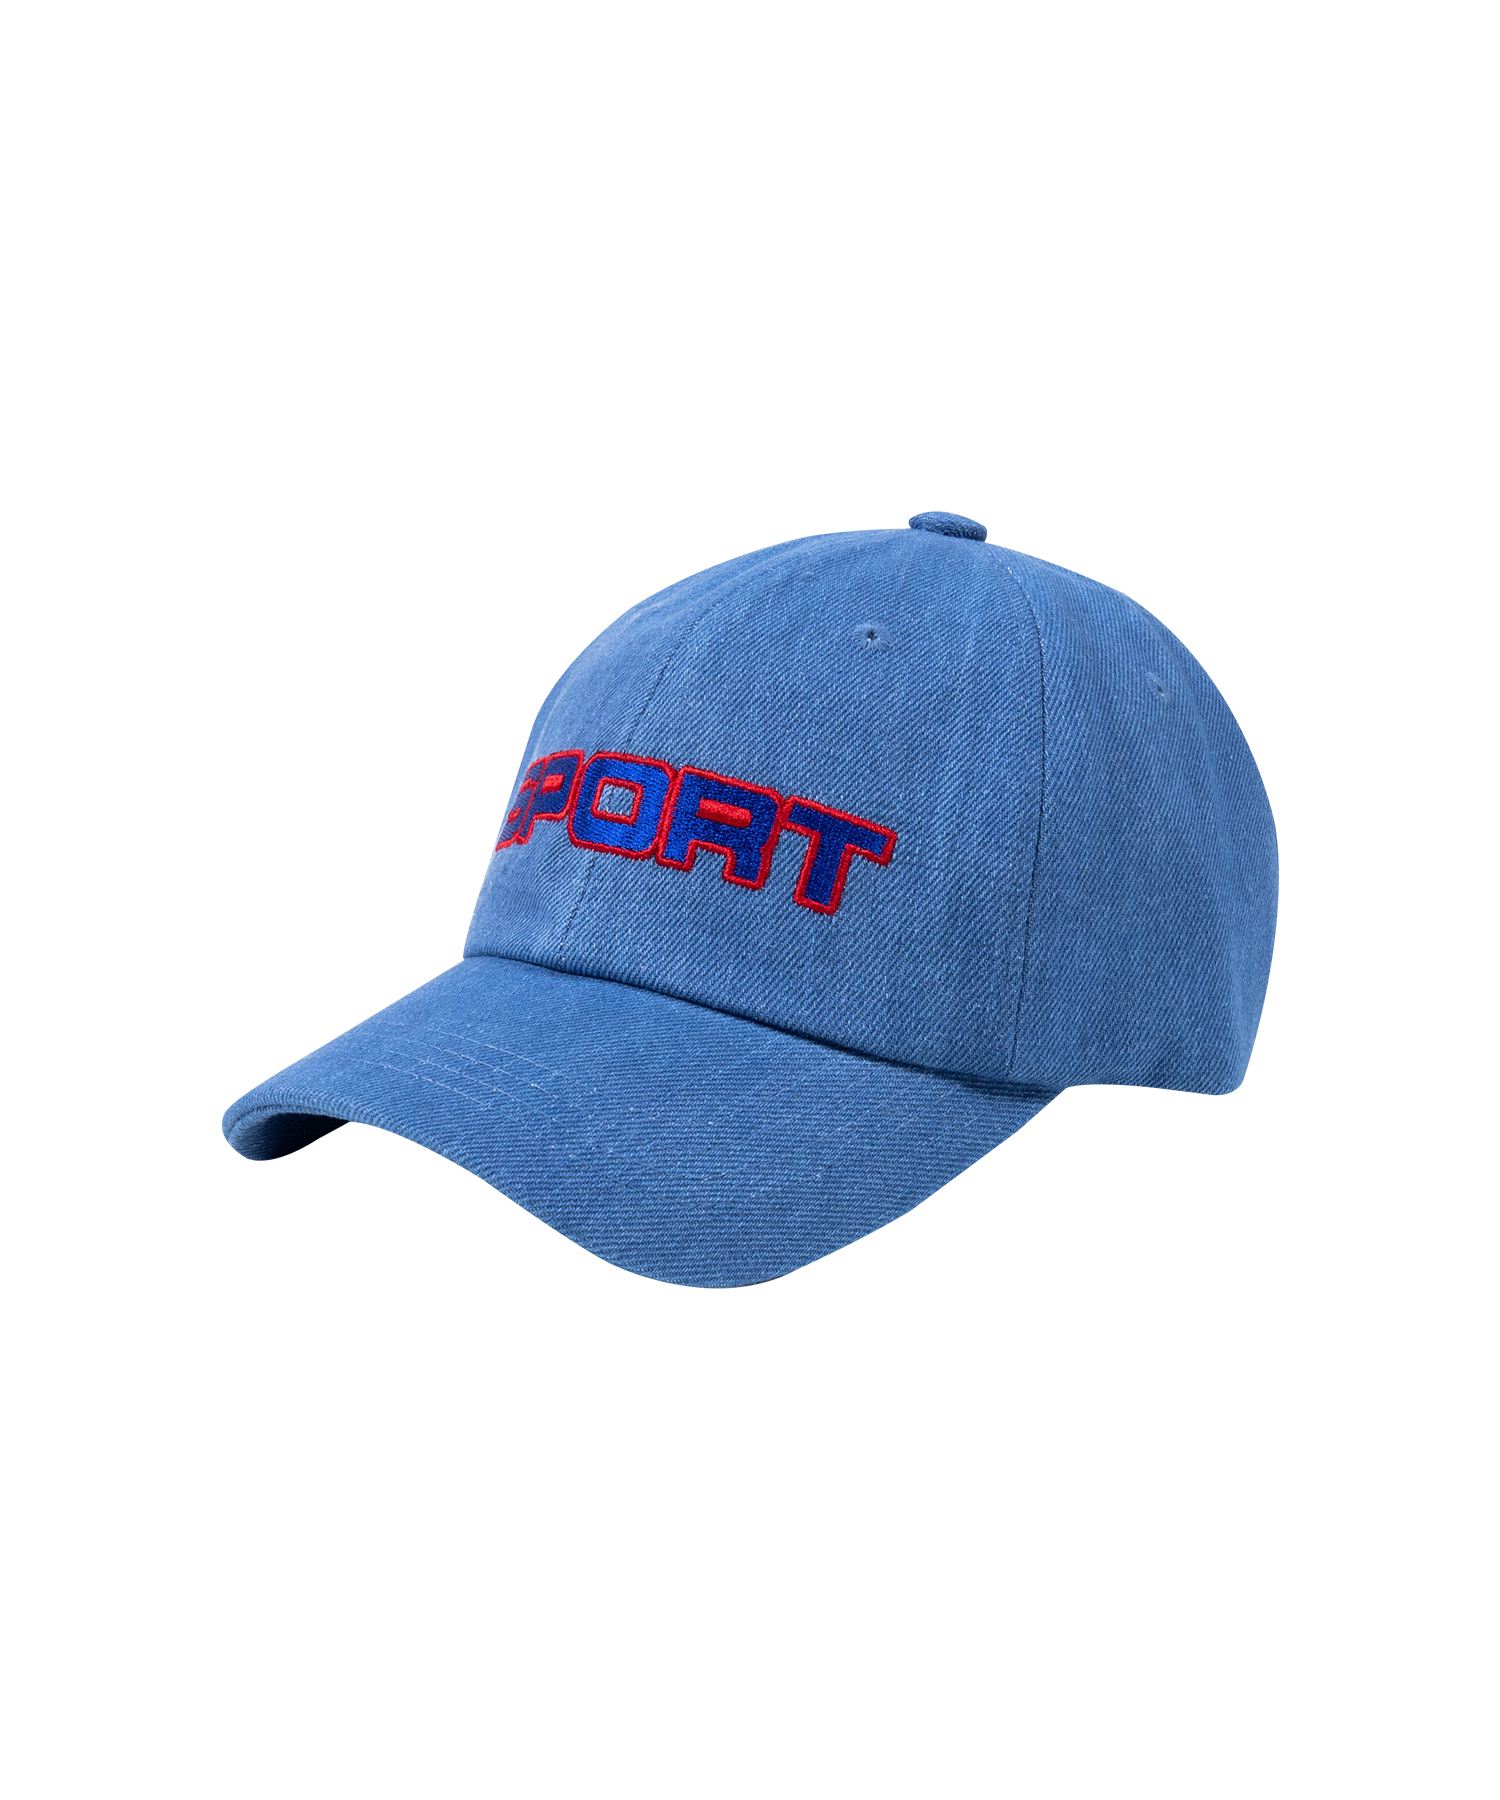 SPORT BALL CAP [BLUE DENIM]